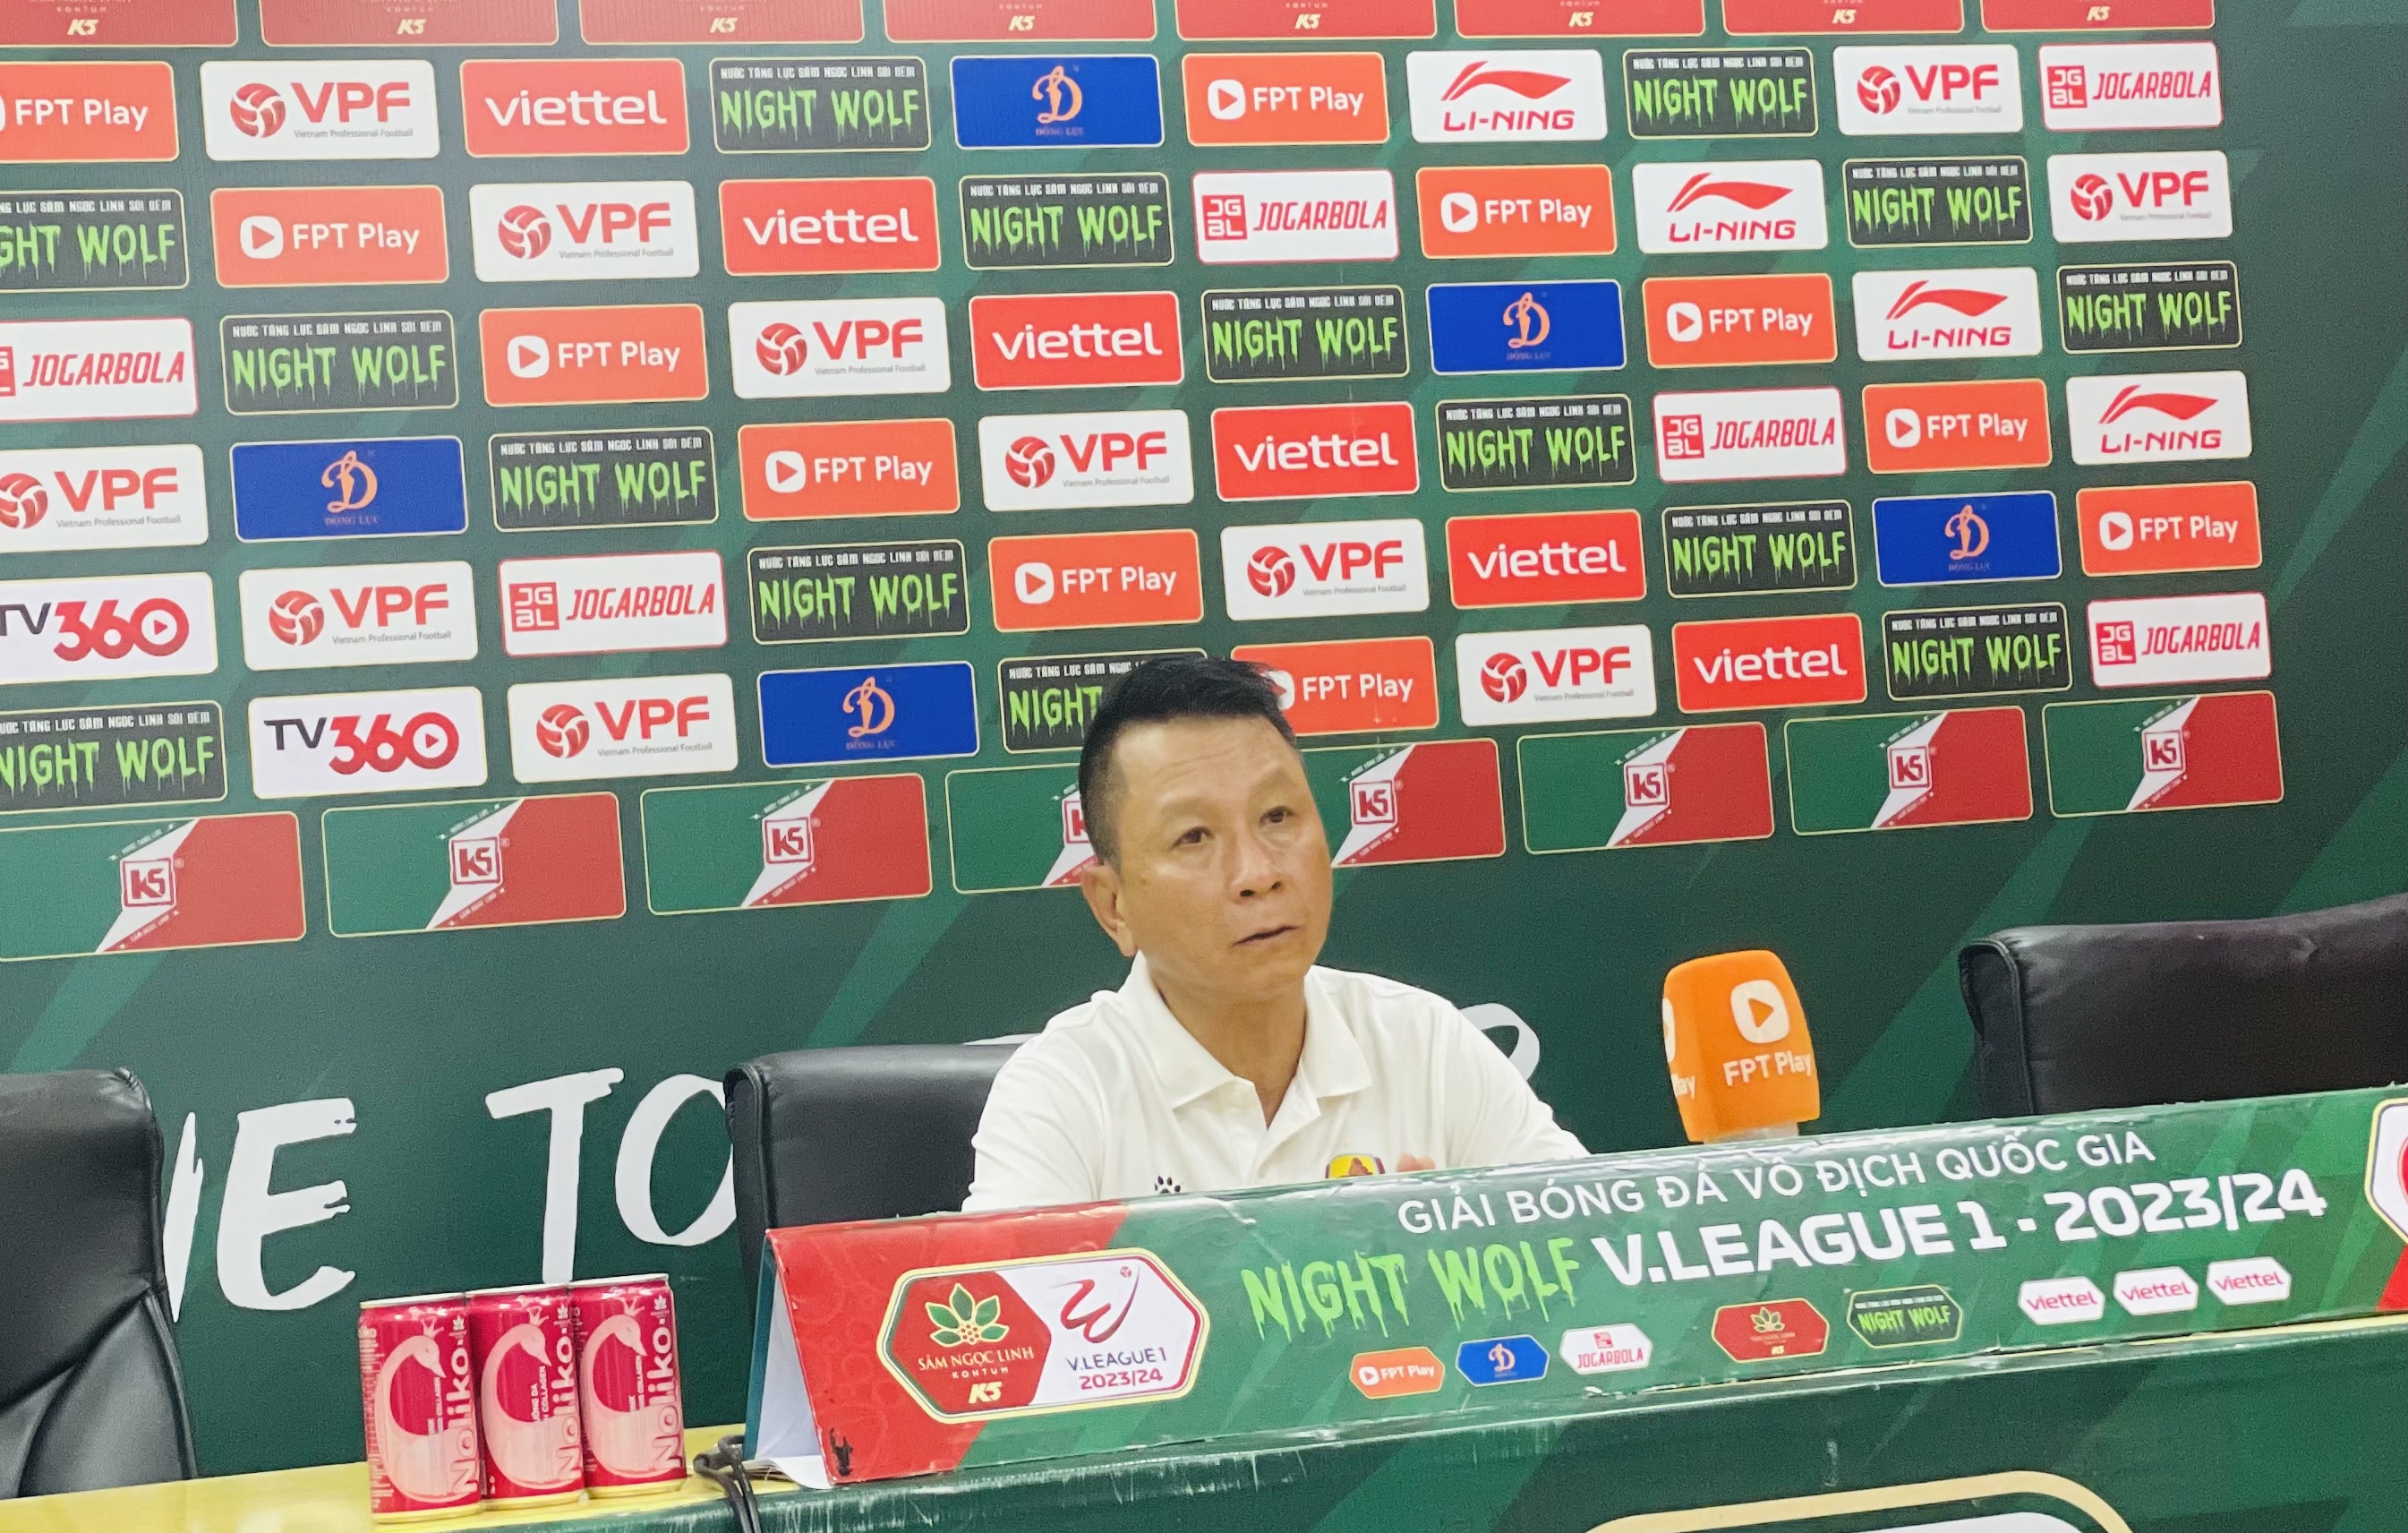 HLV Văn Sỹ Sơn phản ứng trọng tài và VAR đã "ép" Quảng Nam thua ngược Thể Công Viettel- Ảnh 1.